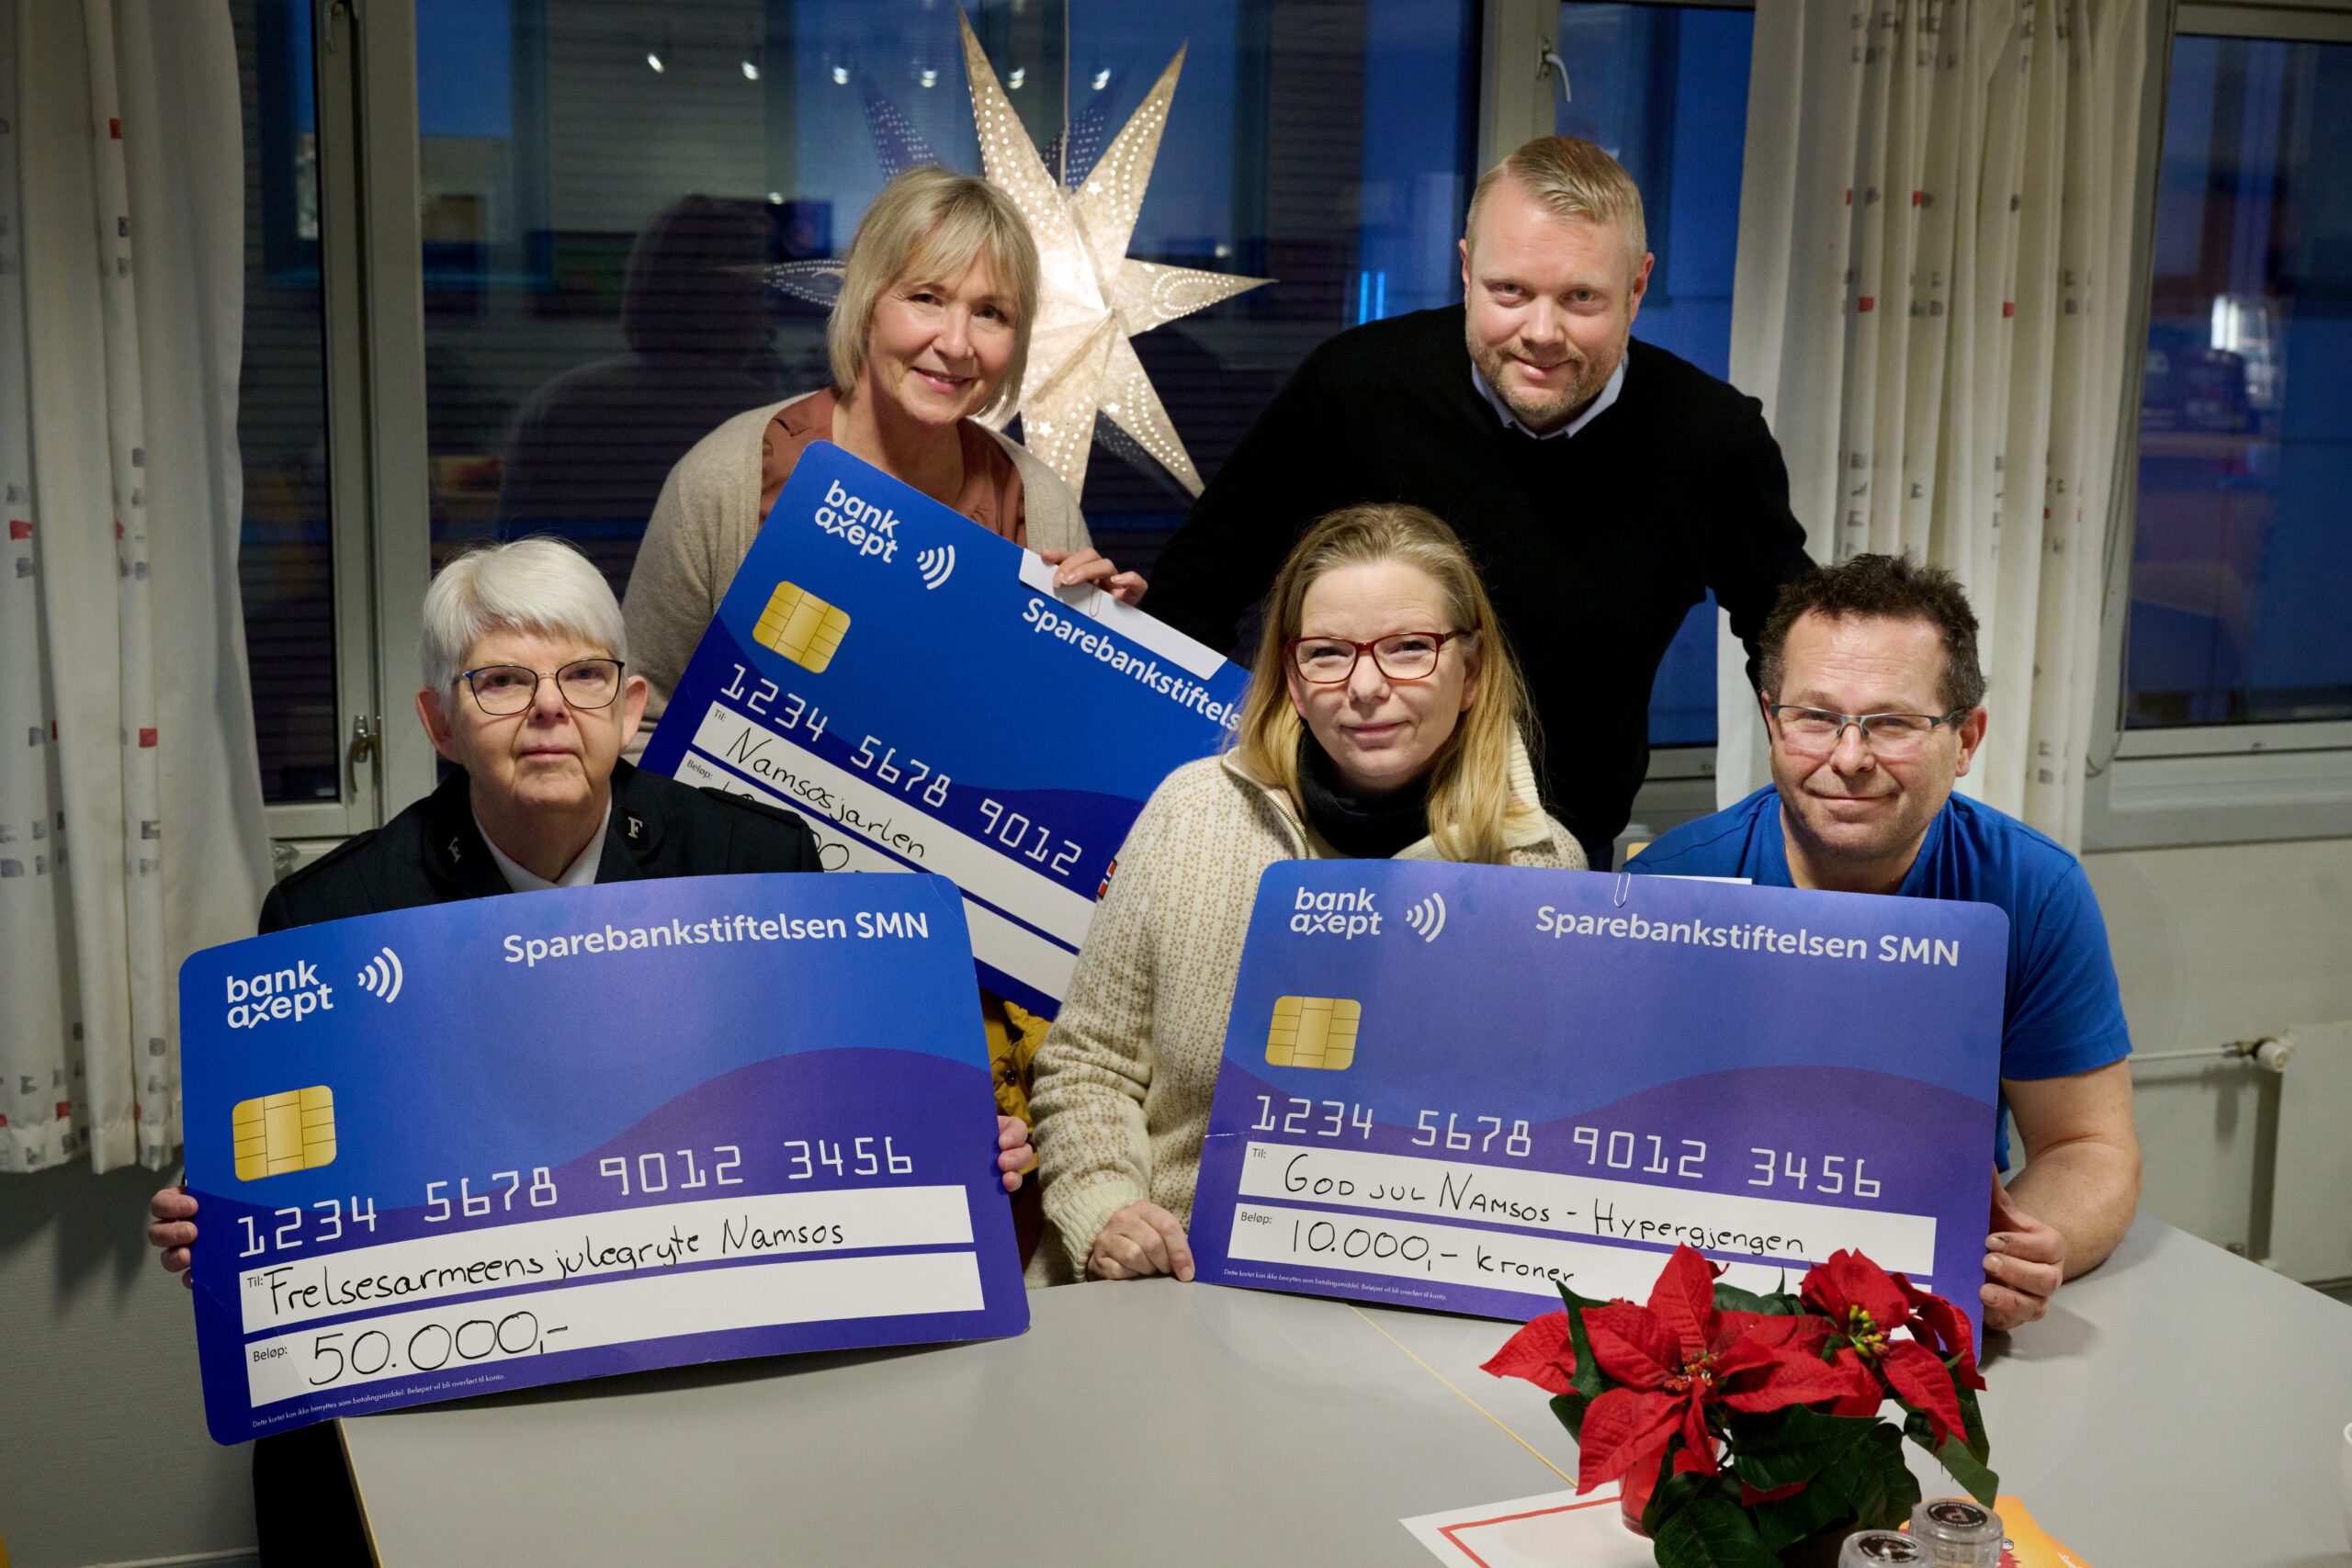 Støtte til frivillige organisasjoner i Namsos ifm juleaktiviteter